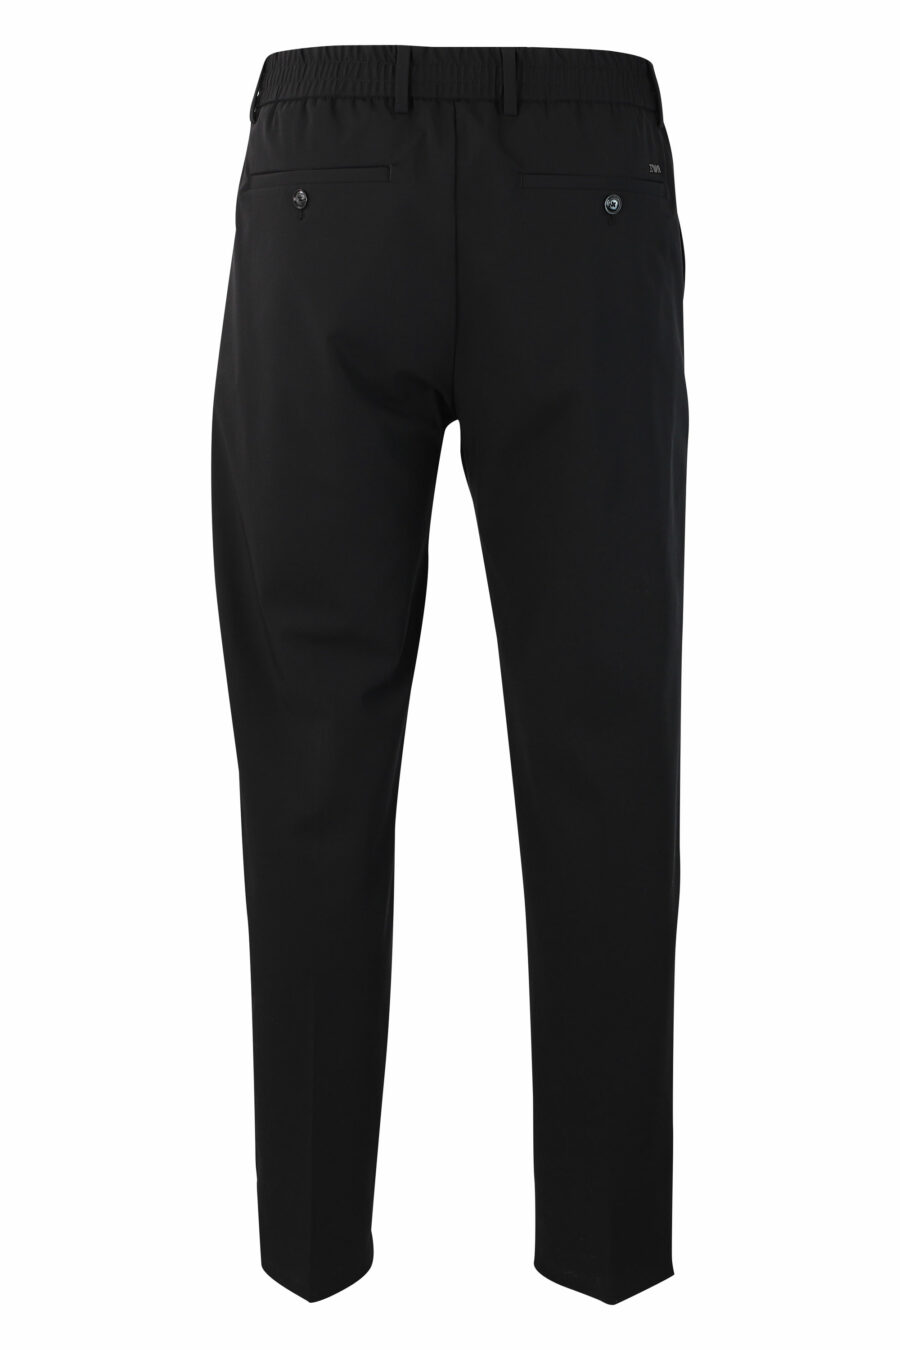 Pantalón negro con minilogo - IMG 9927